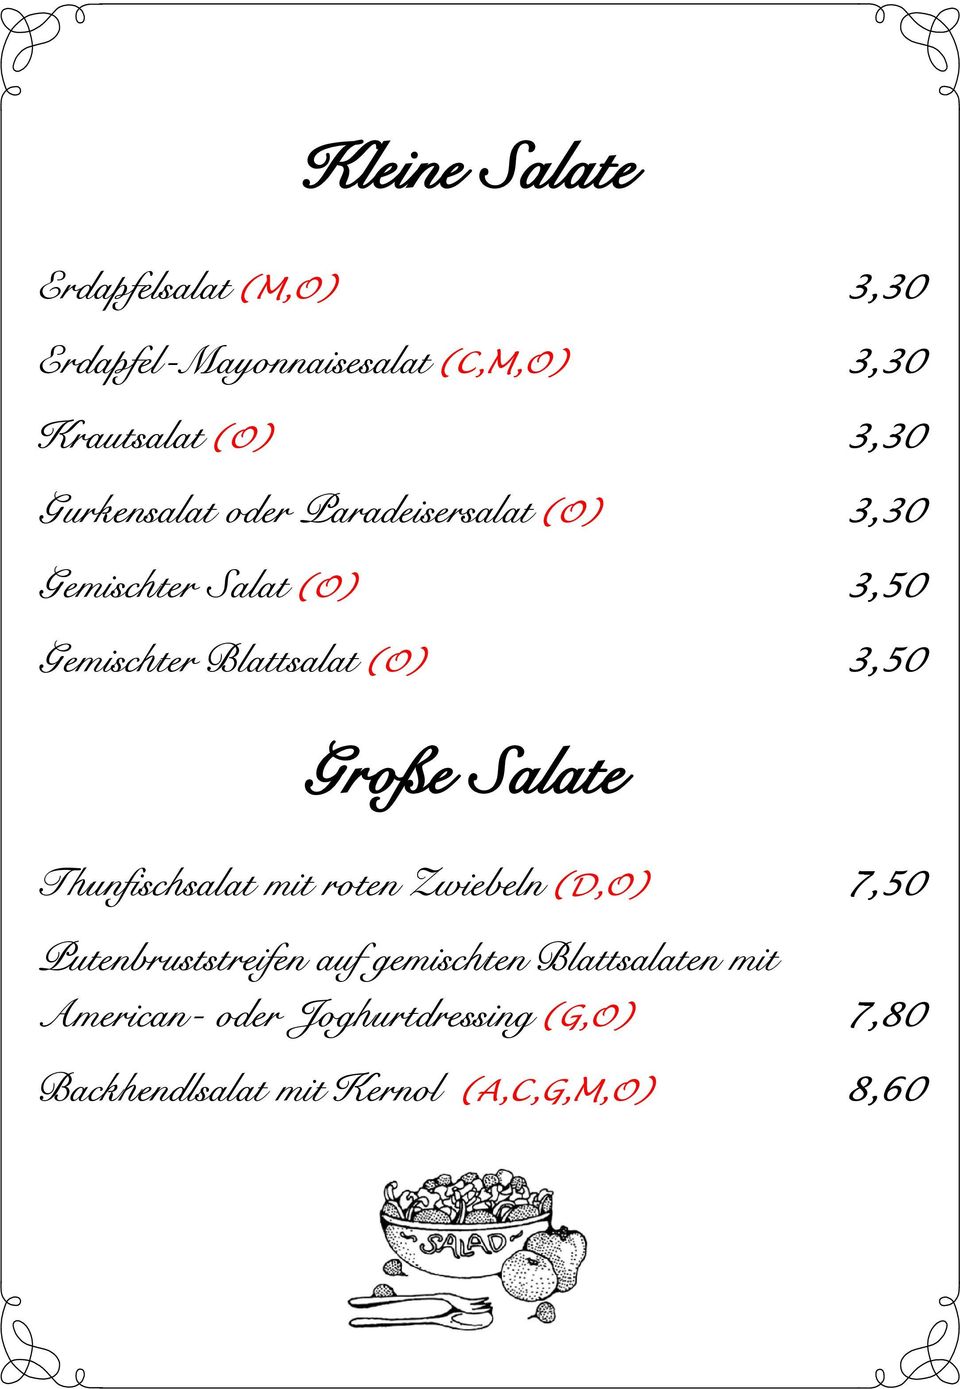 3,50 Große Salate Thunfischsalat mit roten Zwiebeln (D,O) 7,50 Putenbruststreifen auf gemischten